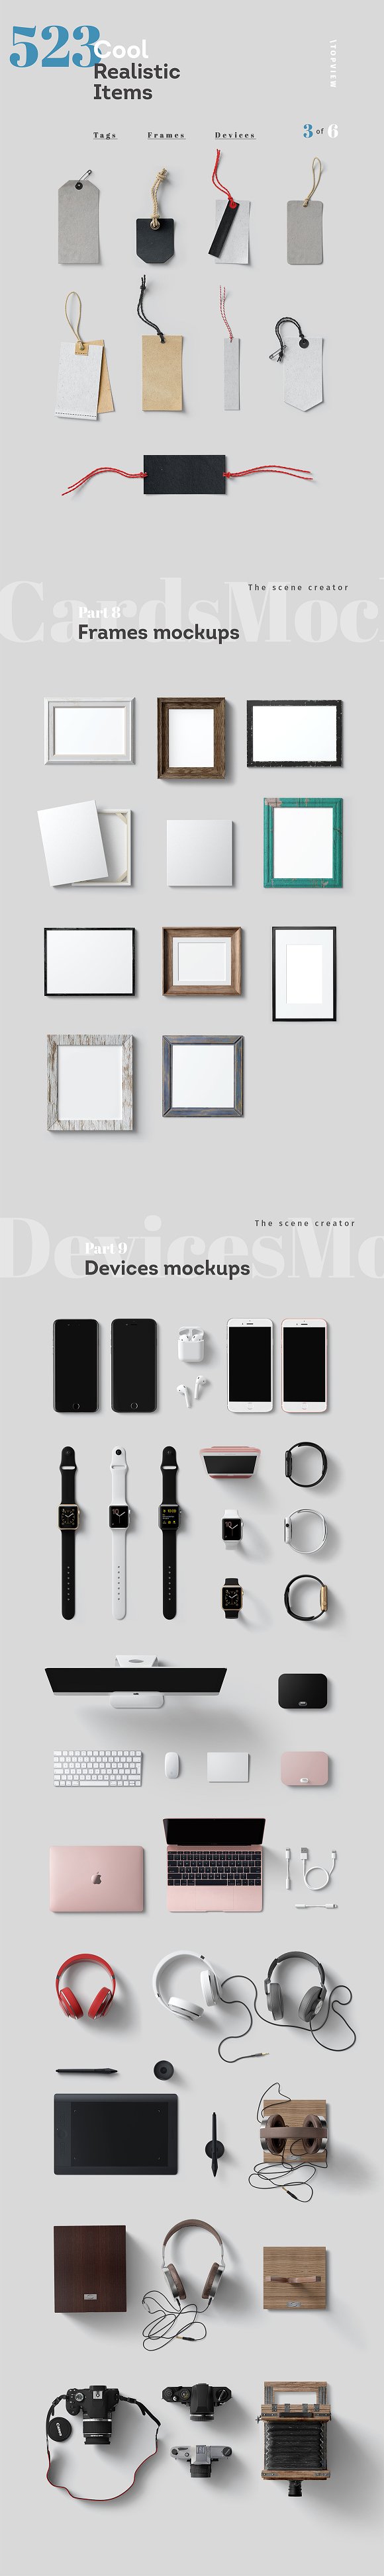 16设计网下午茶：超级办公室物品品牌设计Mockups下载[PSD,解压后26GB+]插图(9)